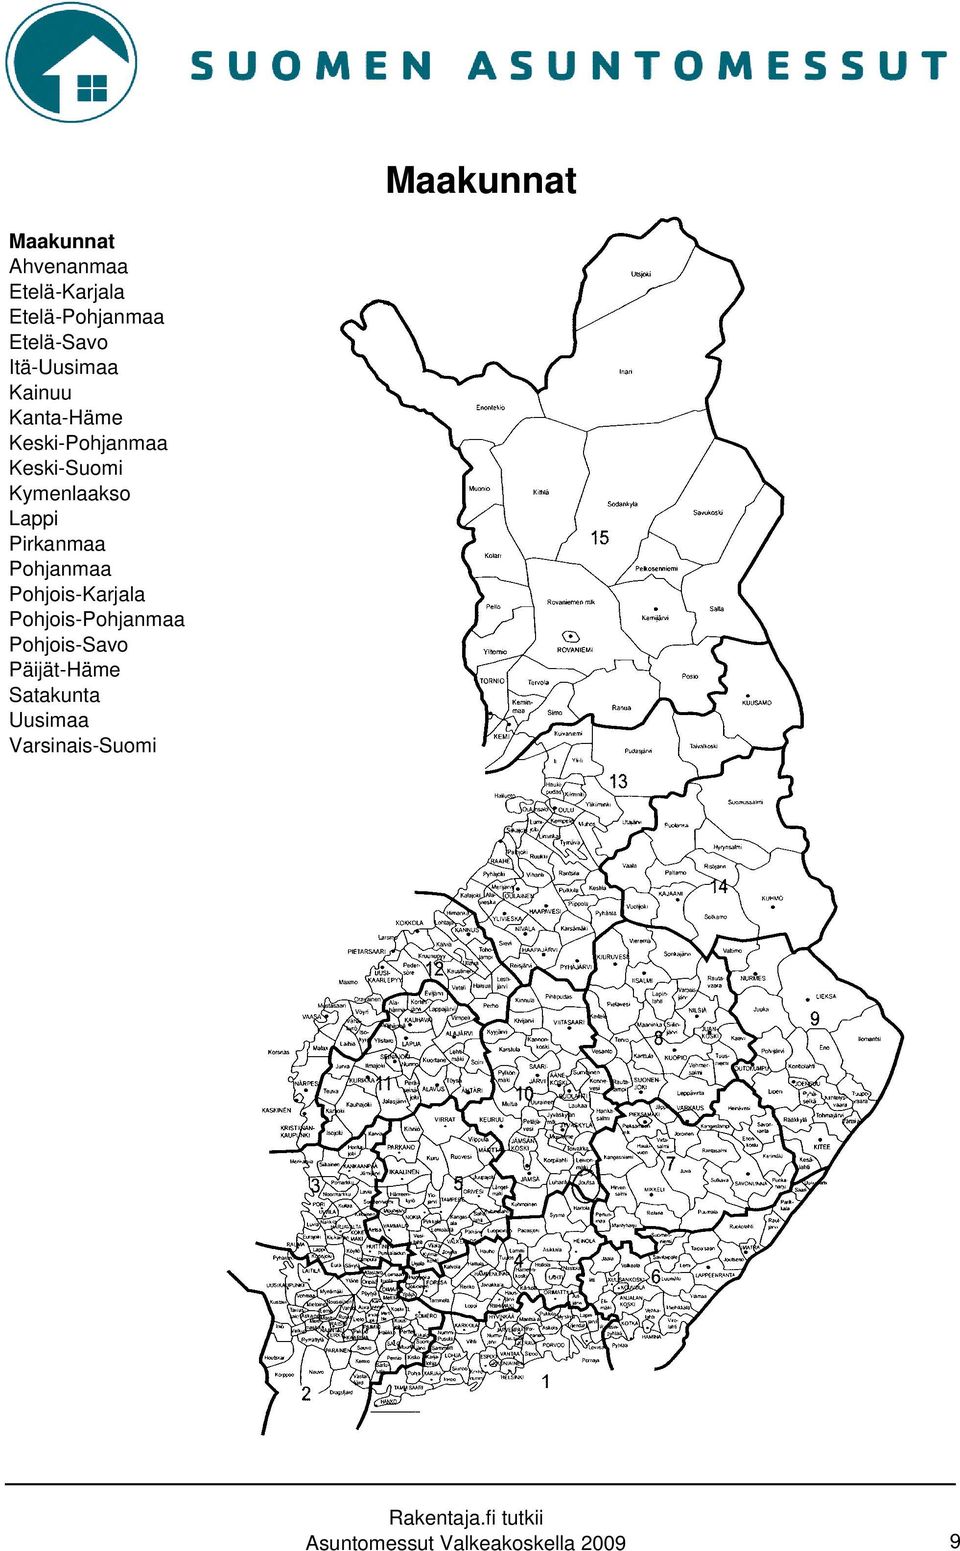 Lappi Pirkanmaa Pohjanmaa Pohjois-Karjala Pohjois-Pohjanmaa Pohjois-Savo